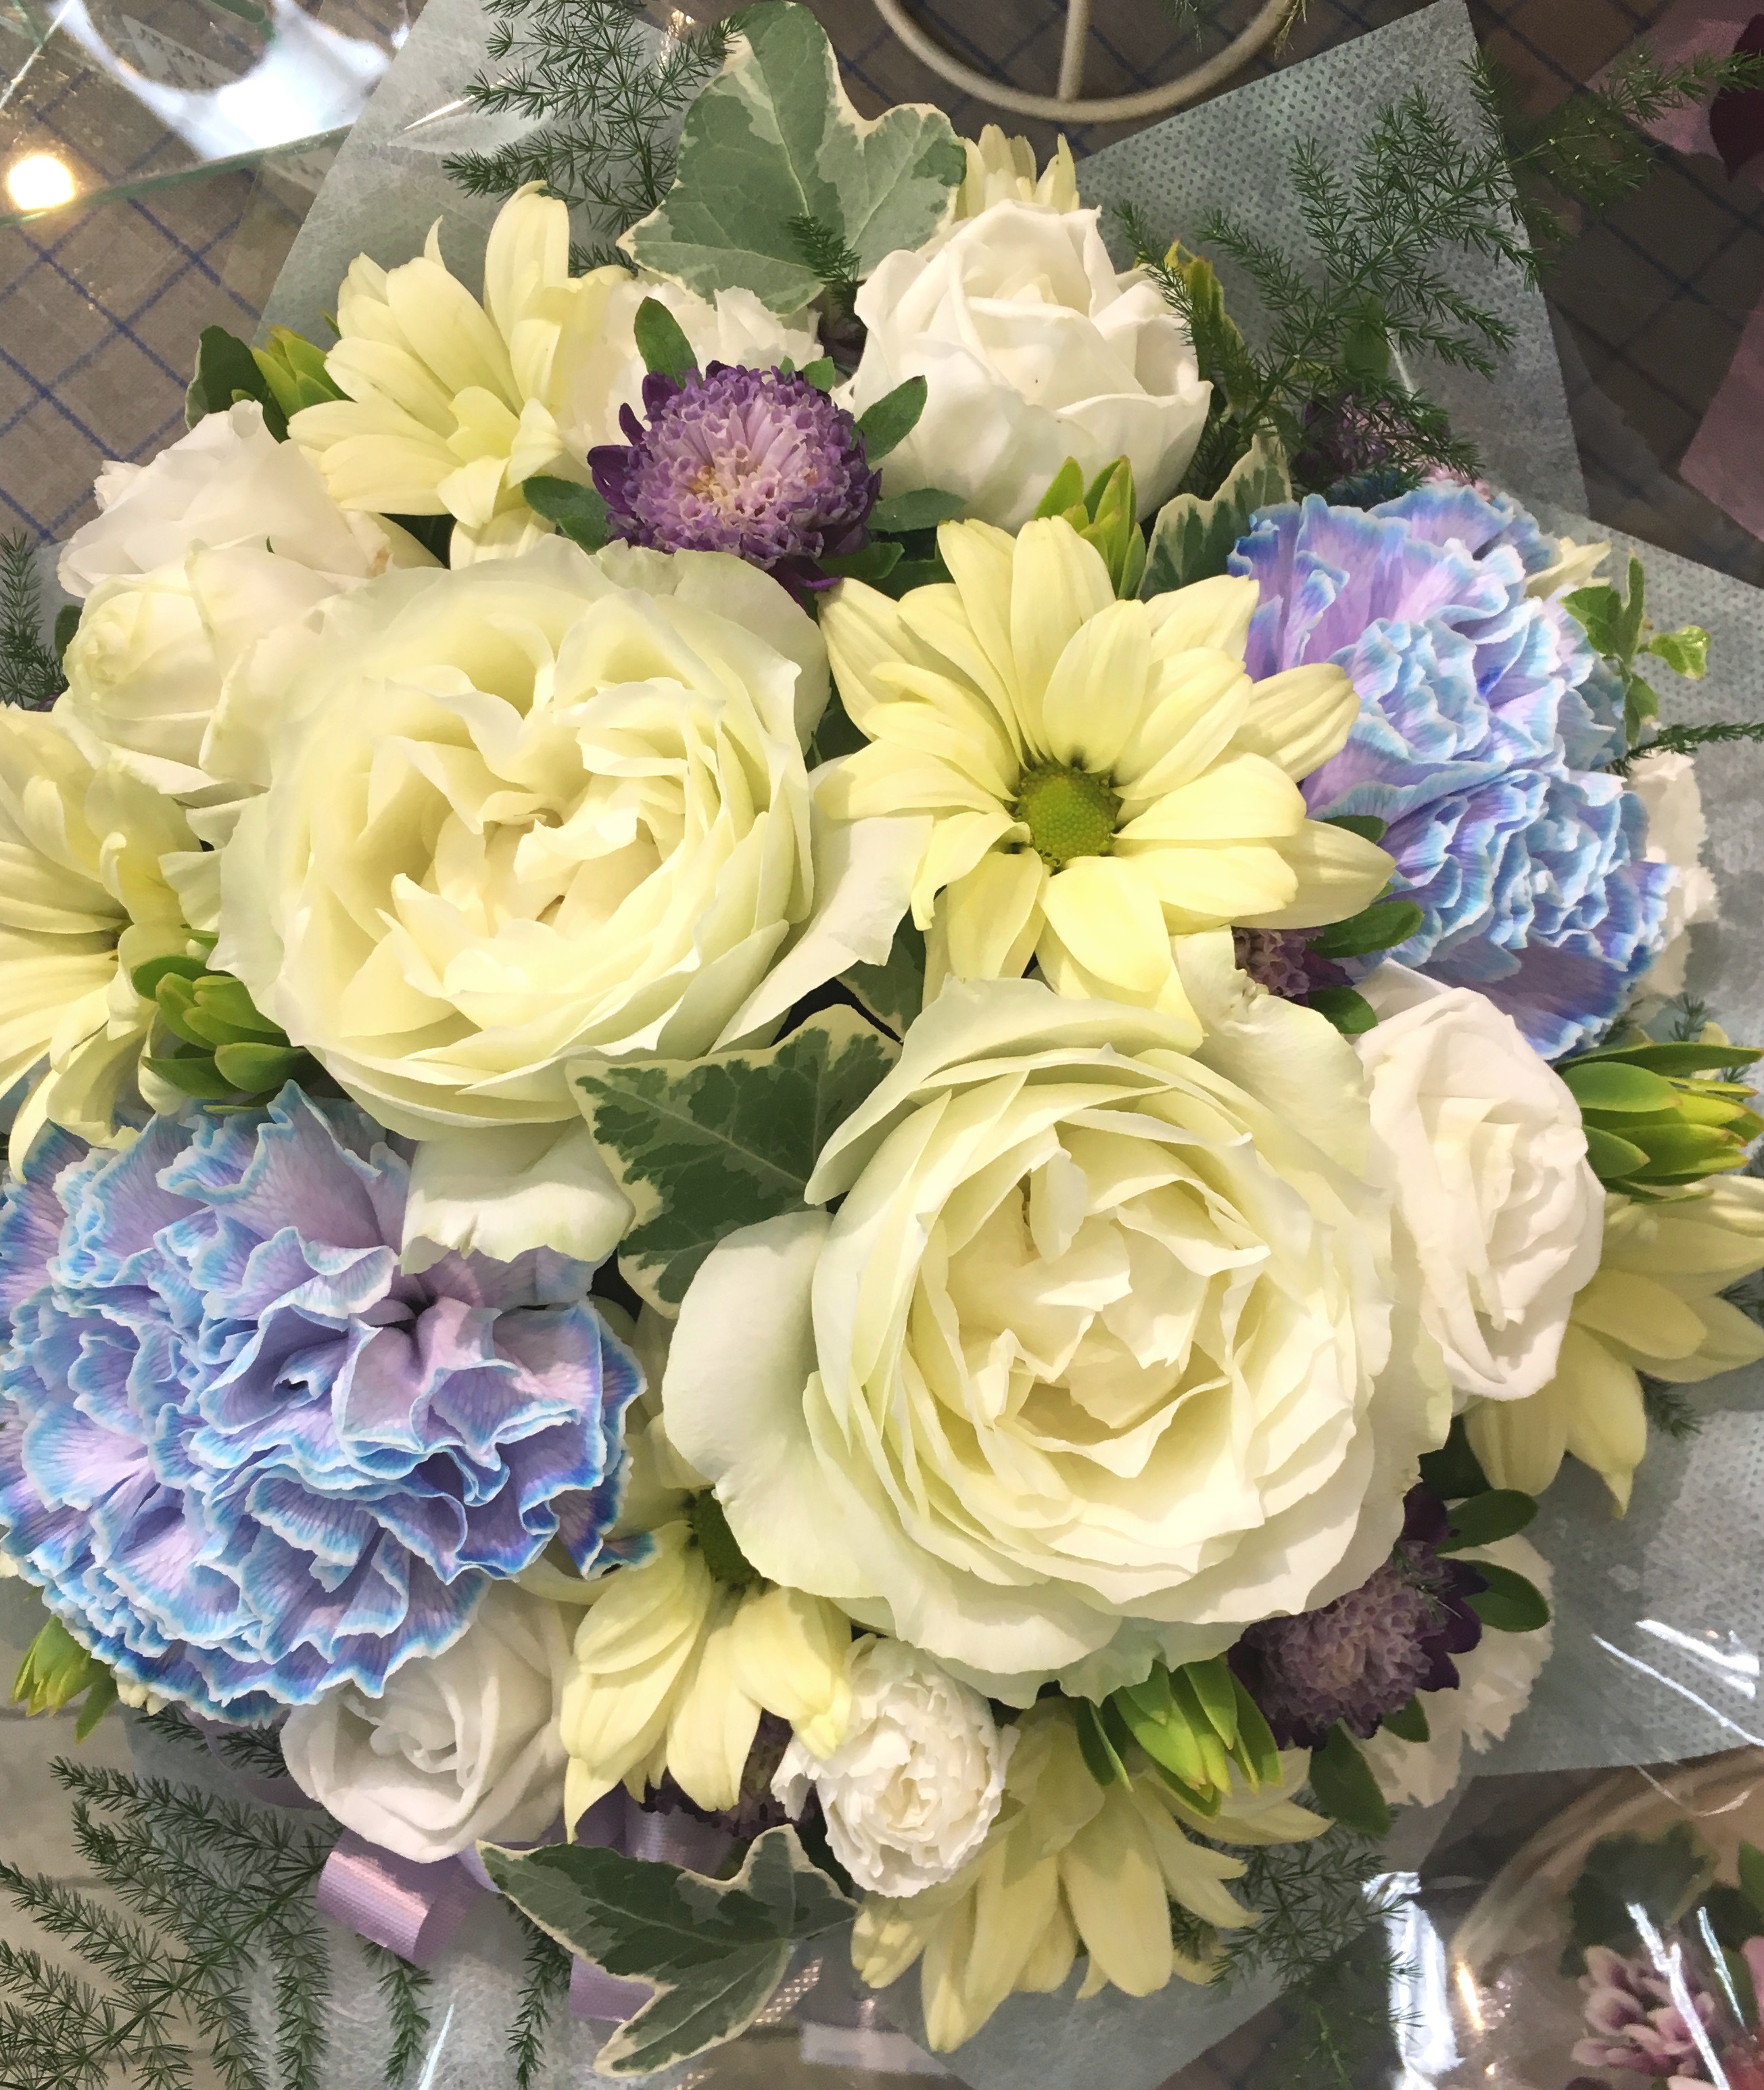 【ナオ花屋の納品事例79】横浜市山田町の法人企業様へスタンド花を配達しました！